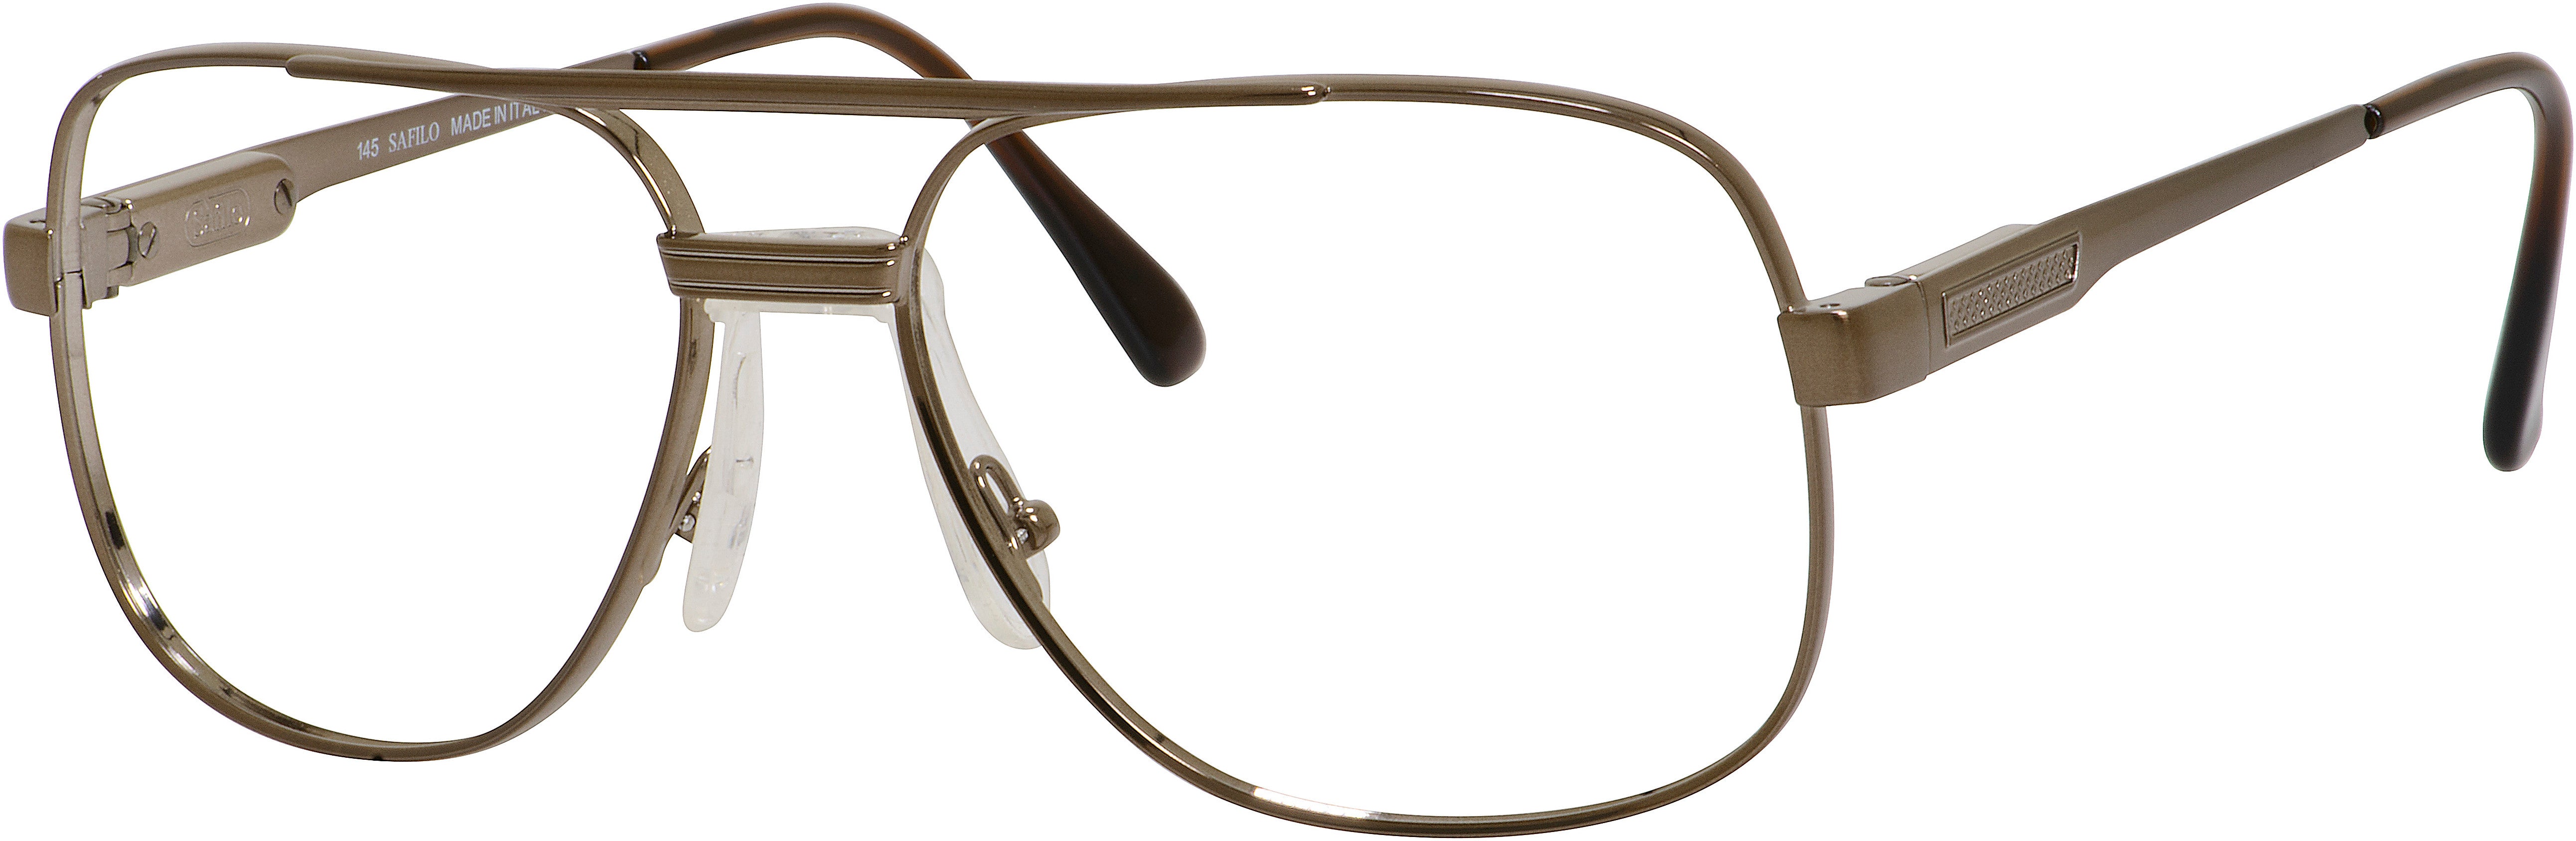  Elasta 3060 Rectangular Eyeglasses 0BX4-0BX4  Brown (00 Demo Lens)